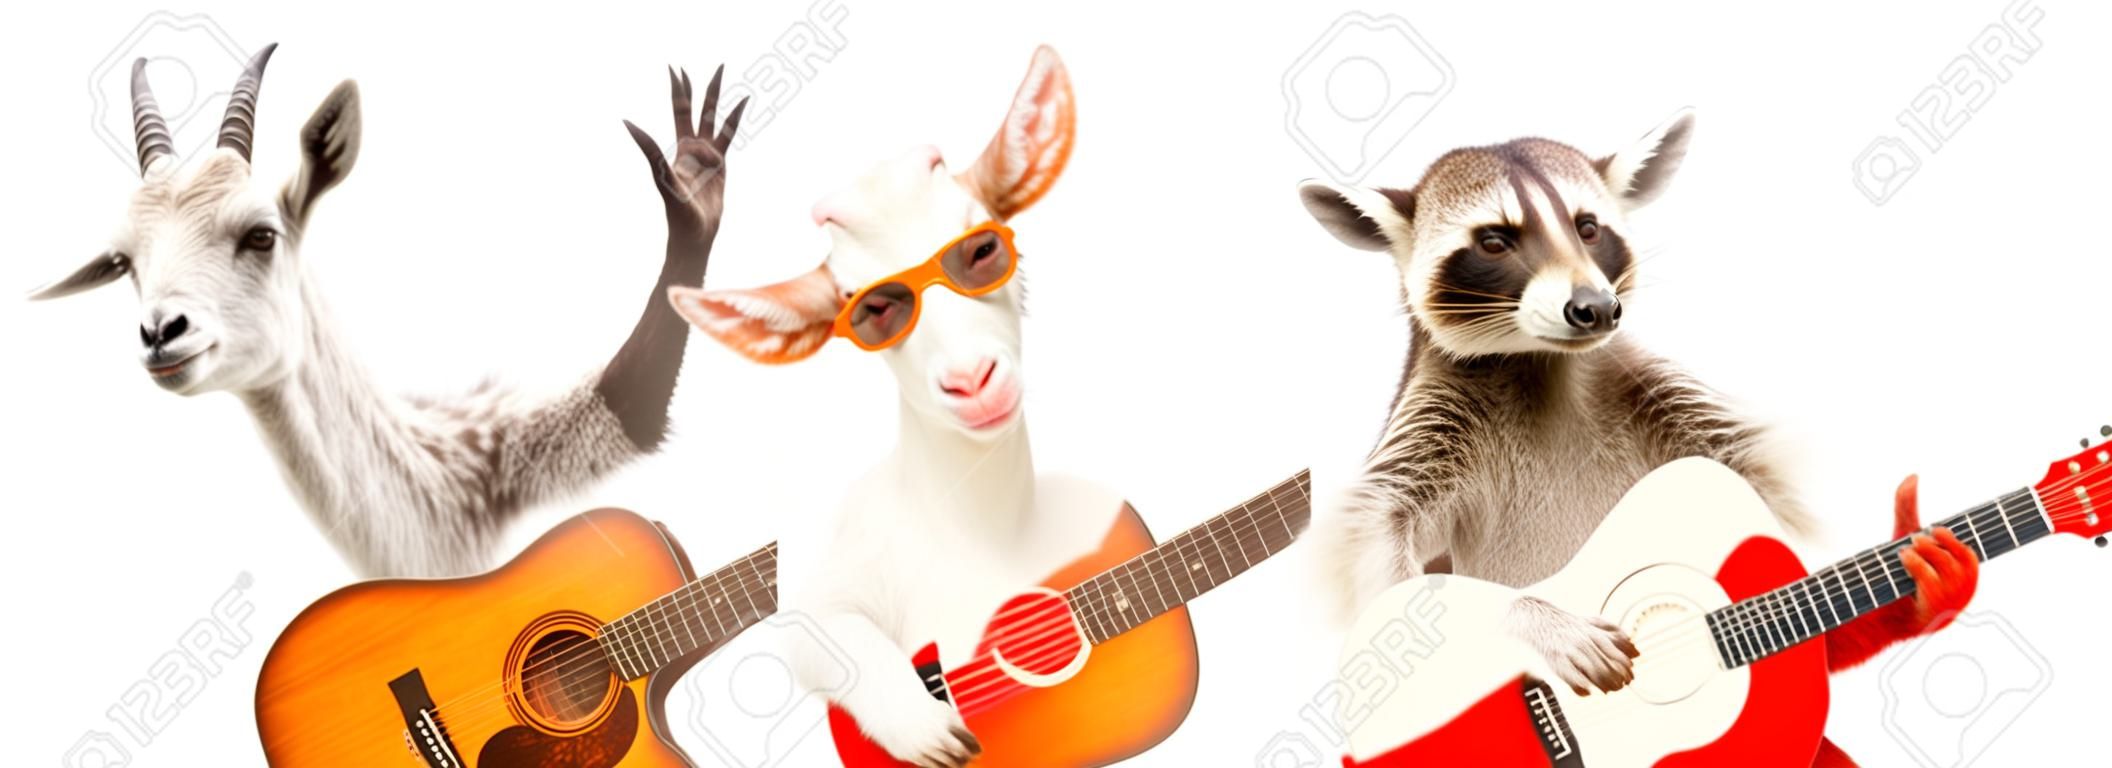 Lustiger Waschbär mit Akustikgitarre und Ziege mit E-Gitarre isoliert auf weißem Hintergrund